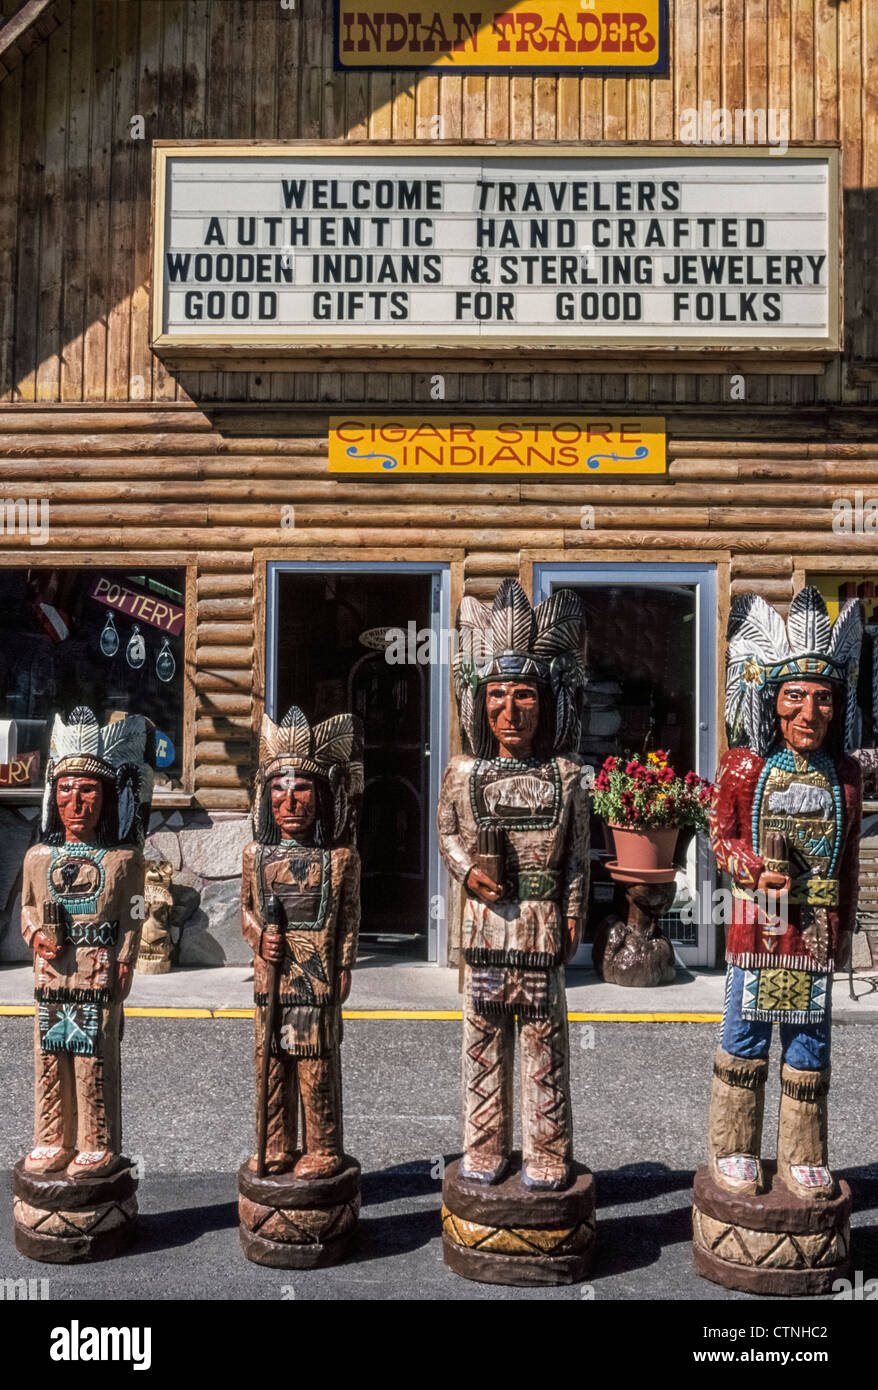 Sculpté à la main de 4 magasin de cigares indiens en bois sont alignés à vendre en face d'une ancienne boutique de souvenirs de l'Ouest dans la région de Jackson Hole, Wyoming, USA. Banque D'Images